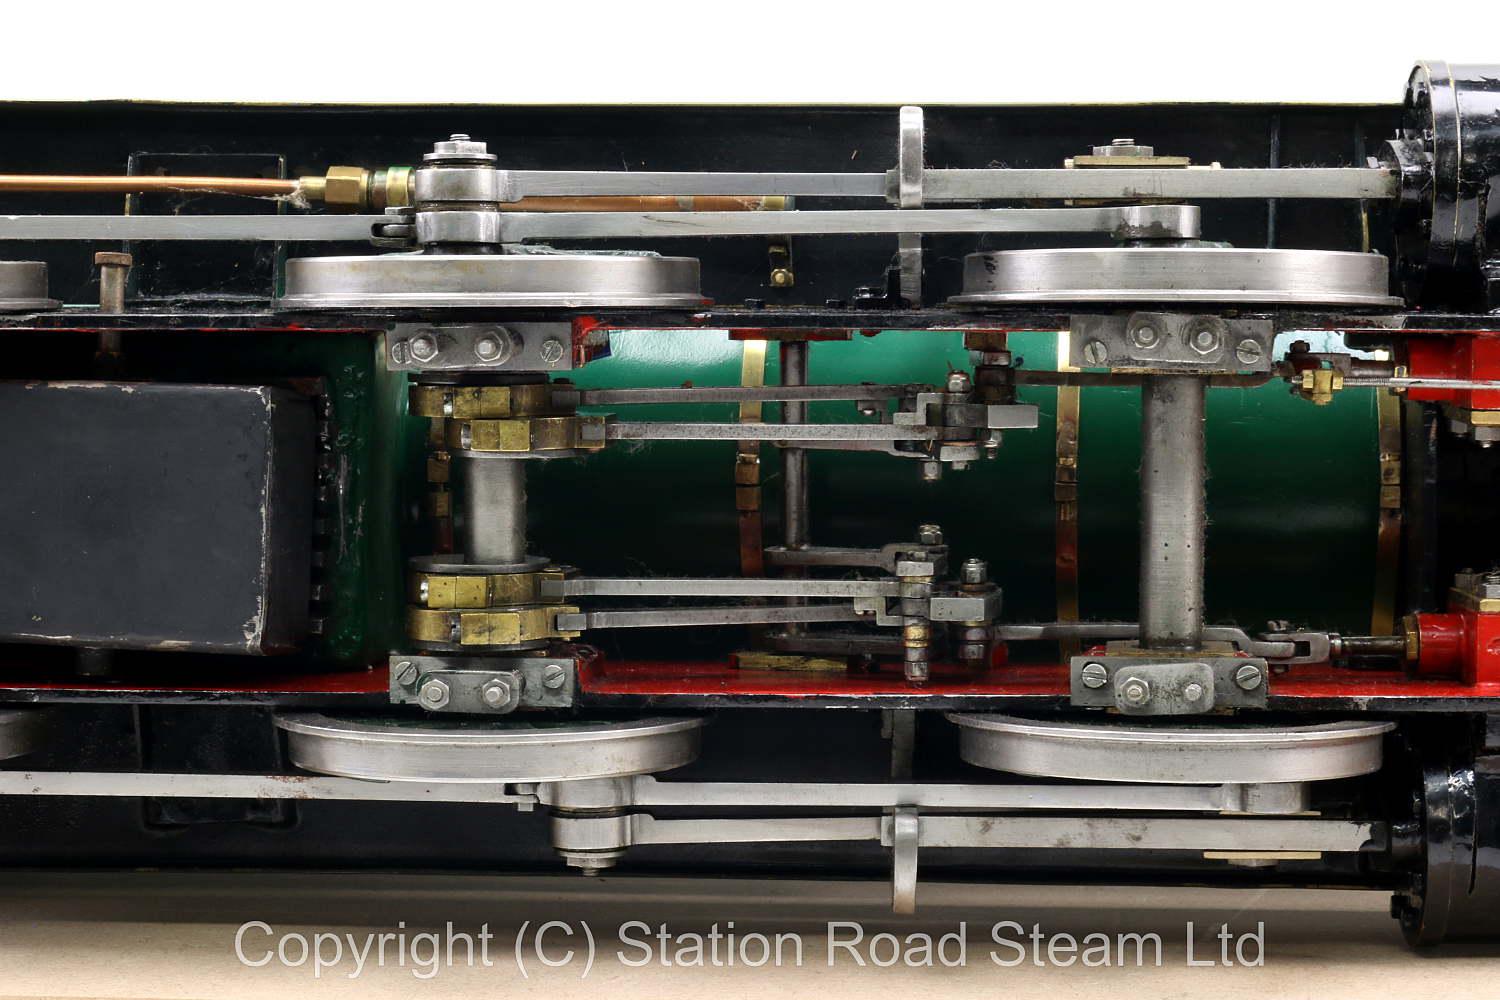 3 1/2 inch gauge GWR 0-6-0 tender locomotive 